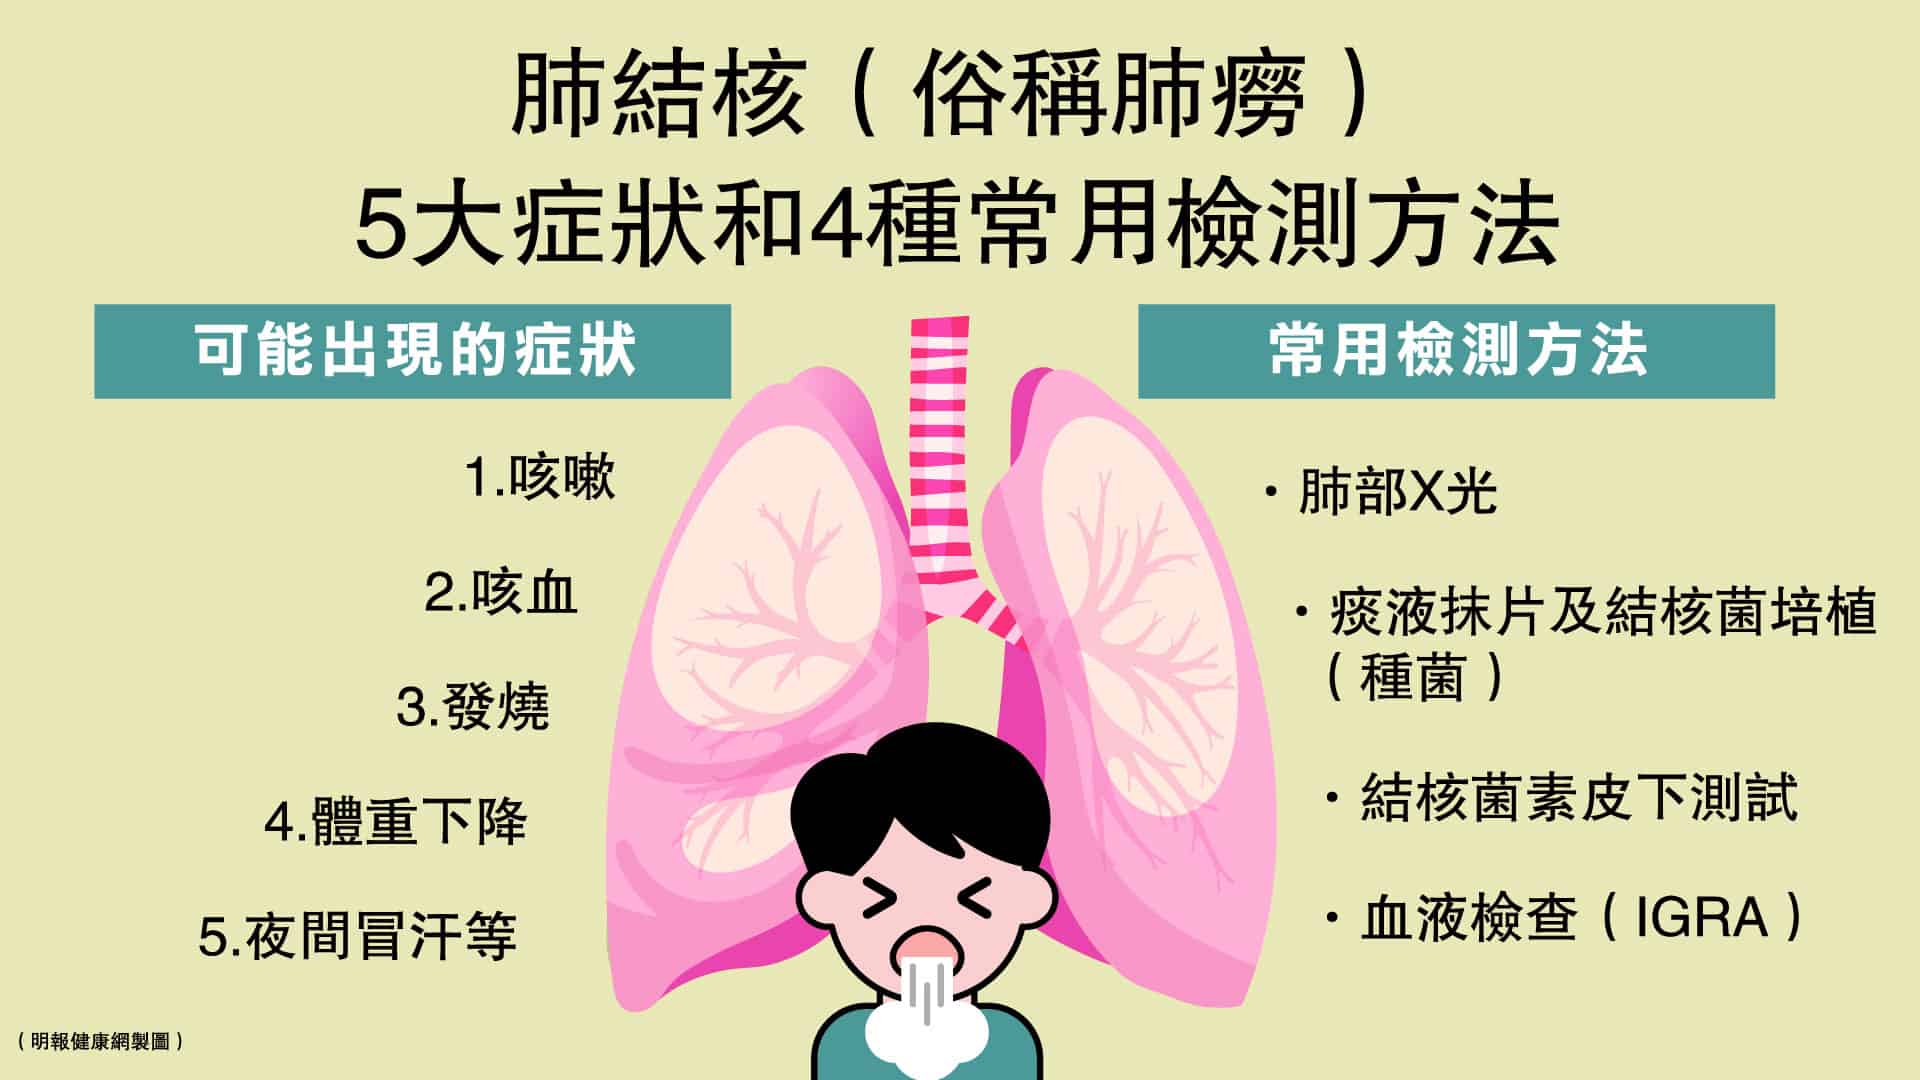 患上肺結核可能出現咳嗽、咳血、發燒、體重下降及夜間冒汗等症狀，如何檢測是否染上肺結核呢？